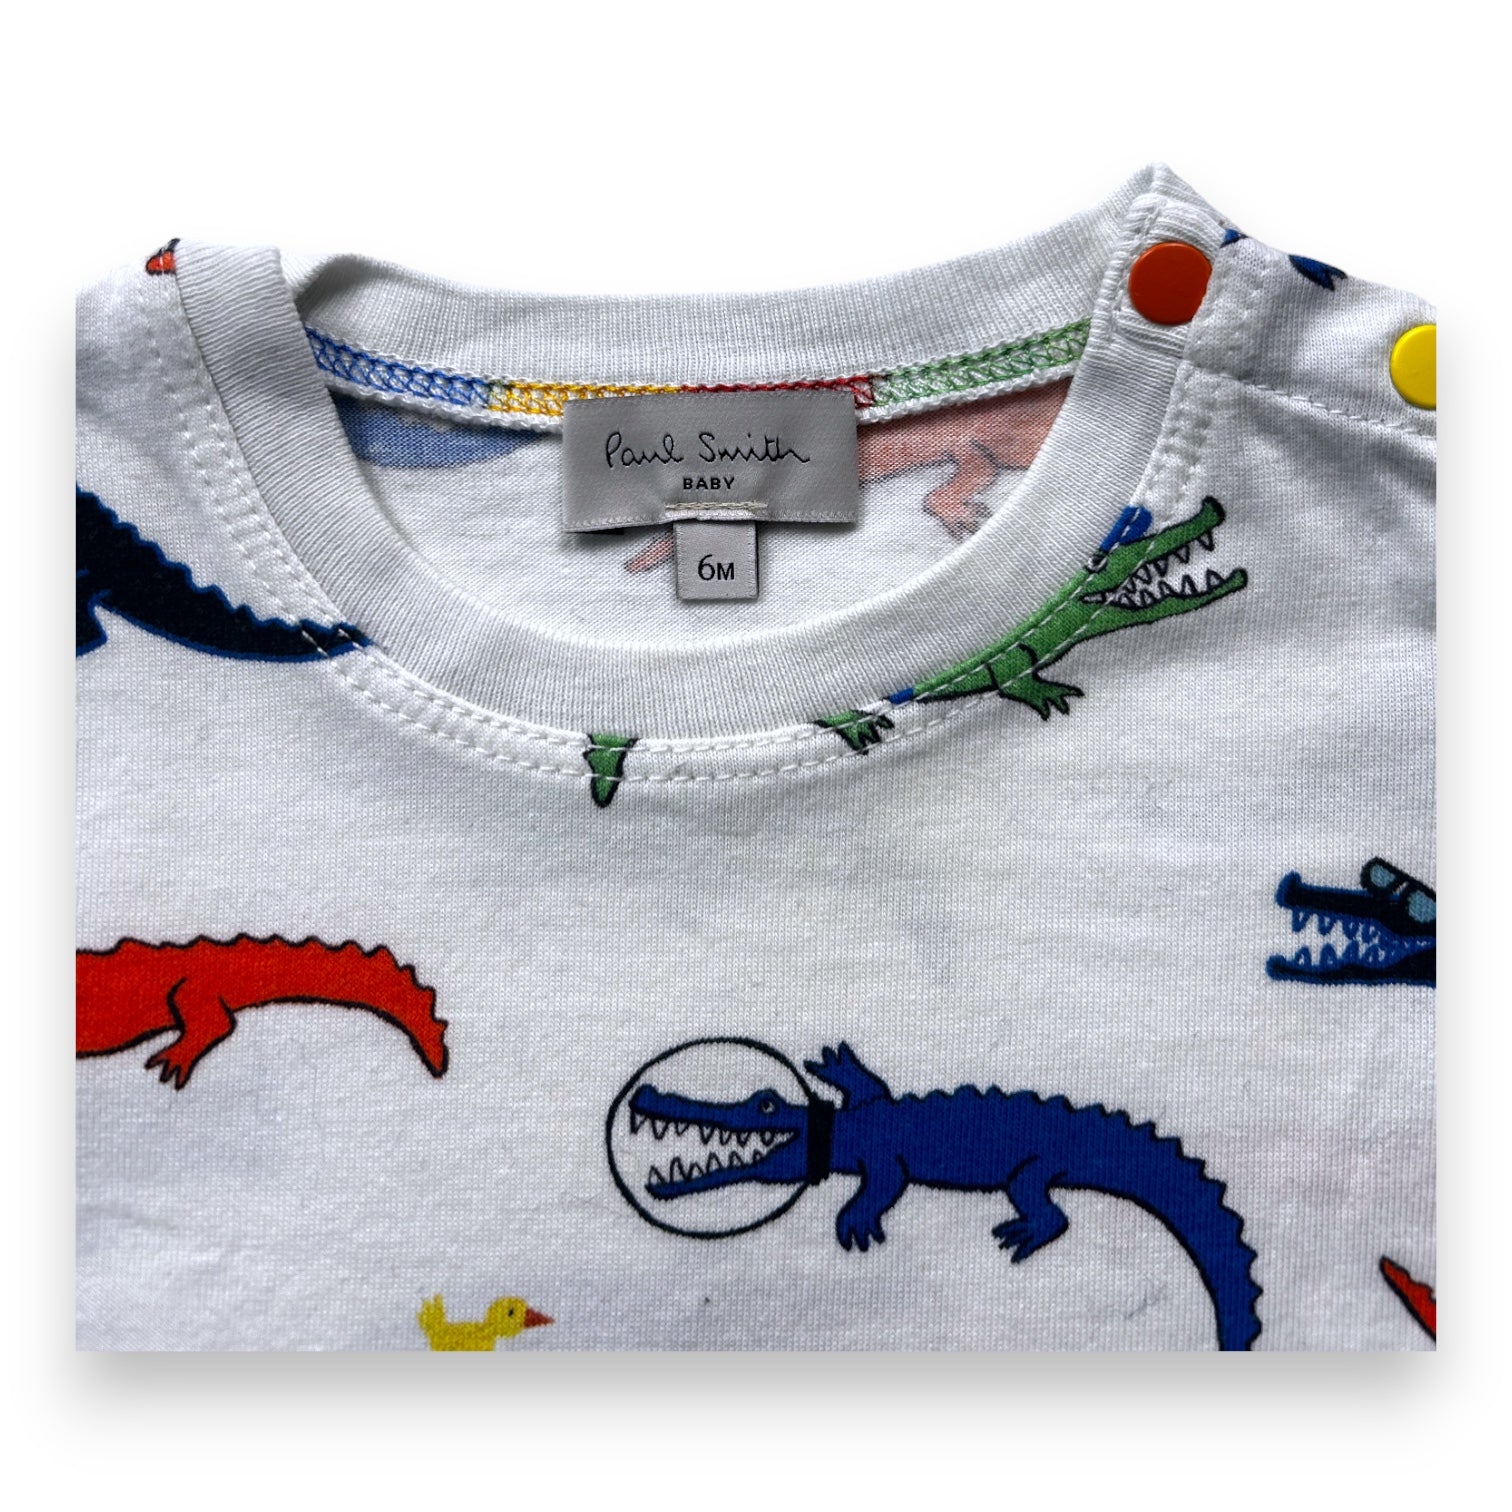 PAUL SMITH - t-shirt blanc imprimé dinosaure - 6 mois